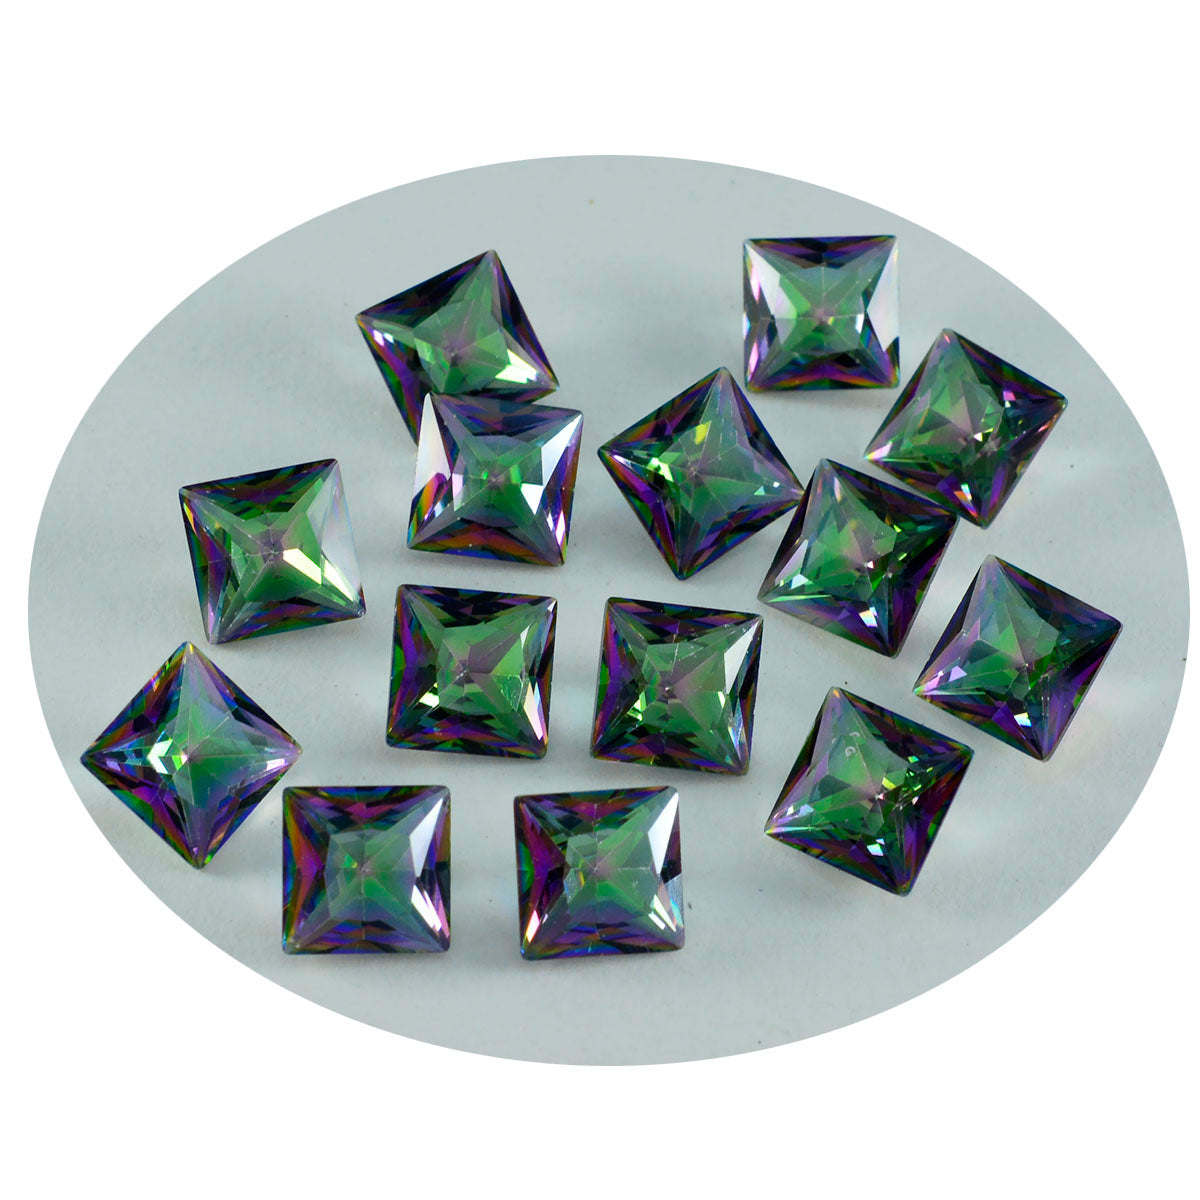 riyogems 1 шт. разноцветный мистический кварц ограненный 6x6 мм квадратной формы красивое качество россыпь драгоценных камней